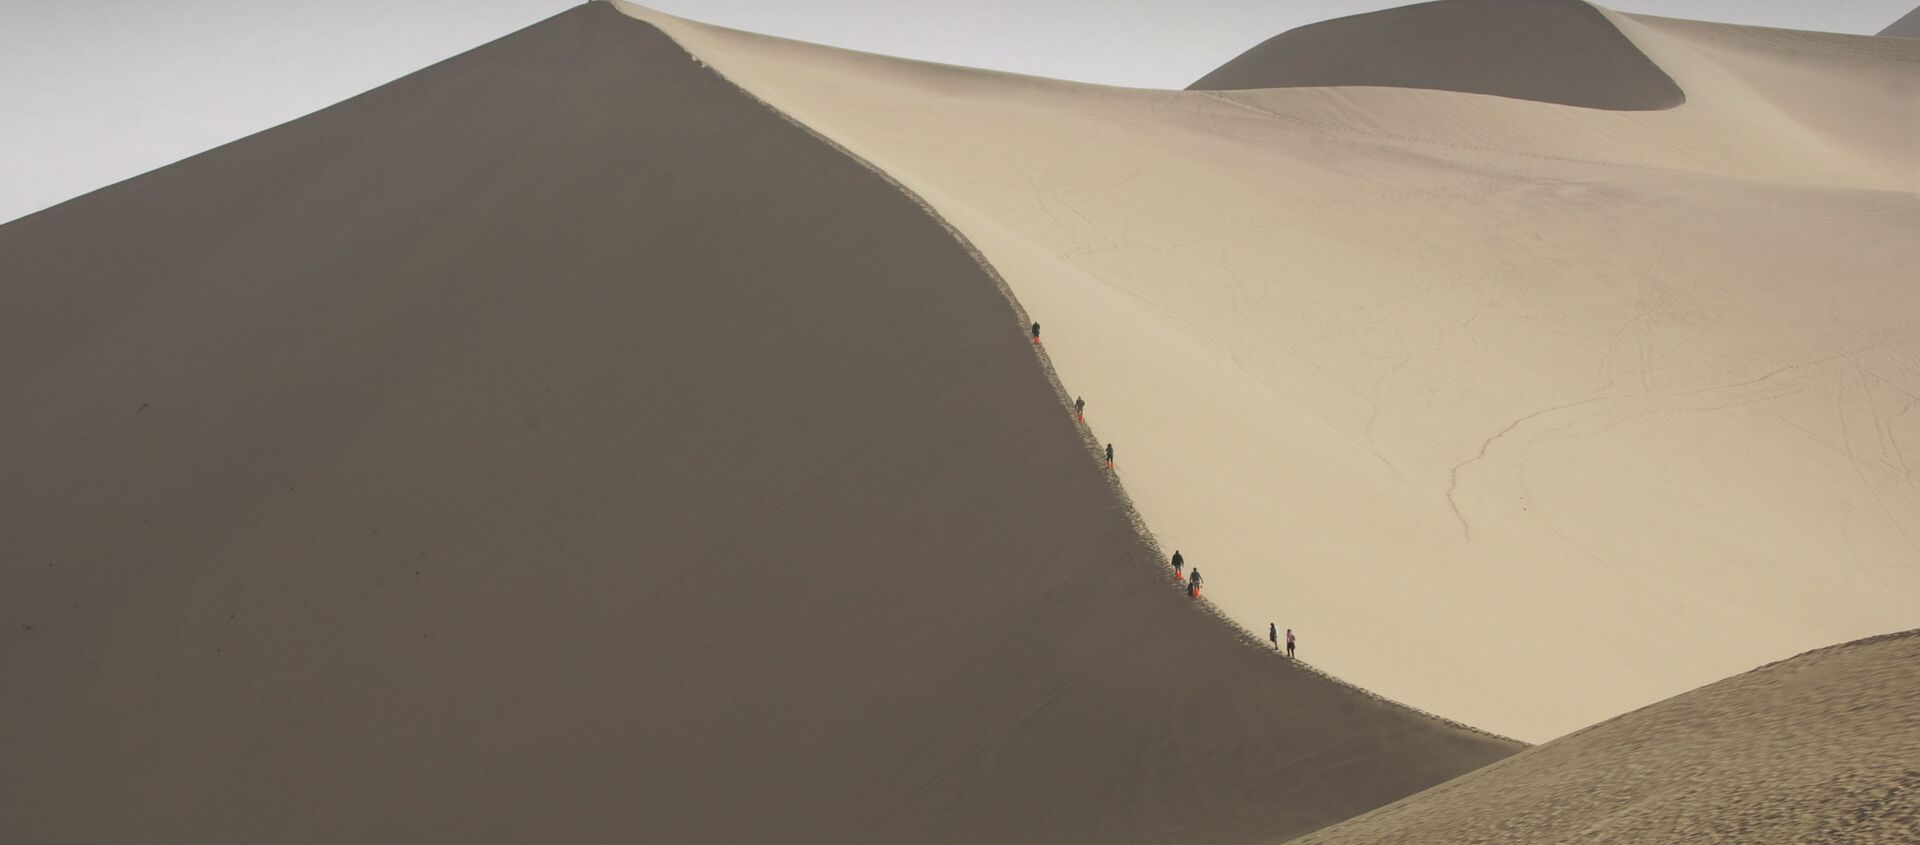 Туристы катаются на верблюдах на краю пустыни, которая угрожает поглотить древний китайский город Дуньхуан  - Sputnik Латвия, 1920, 24.06.2020